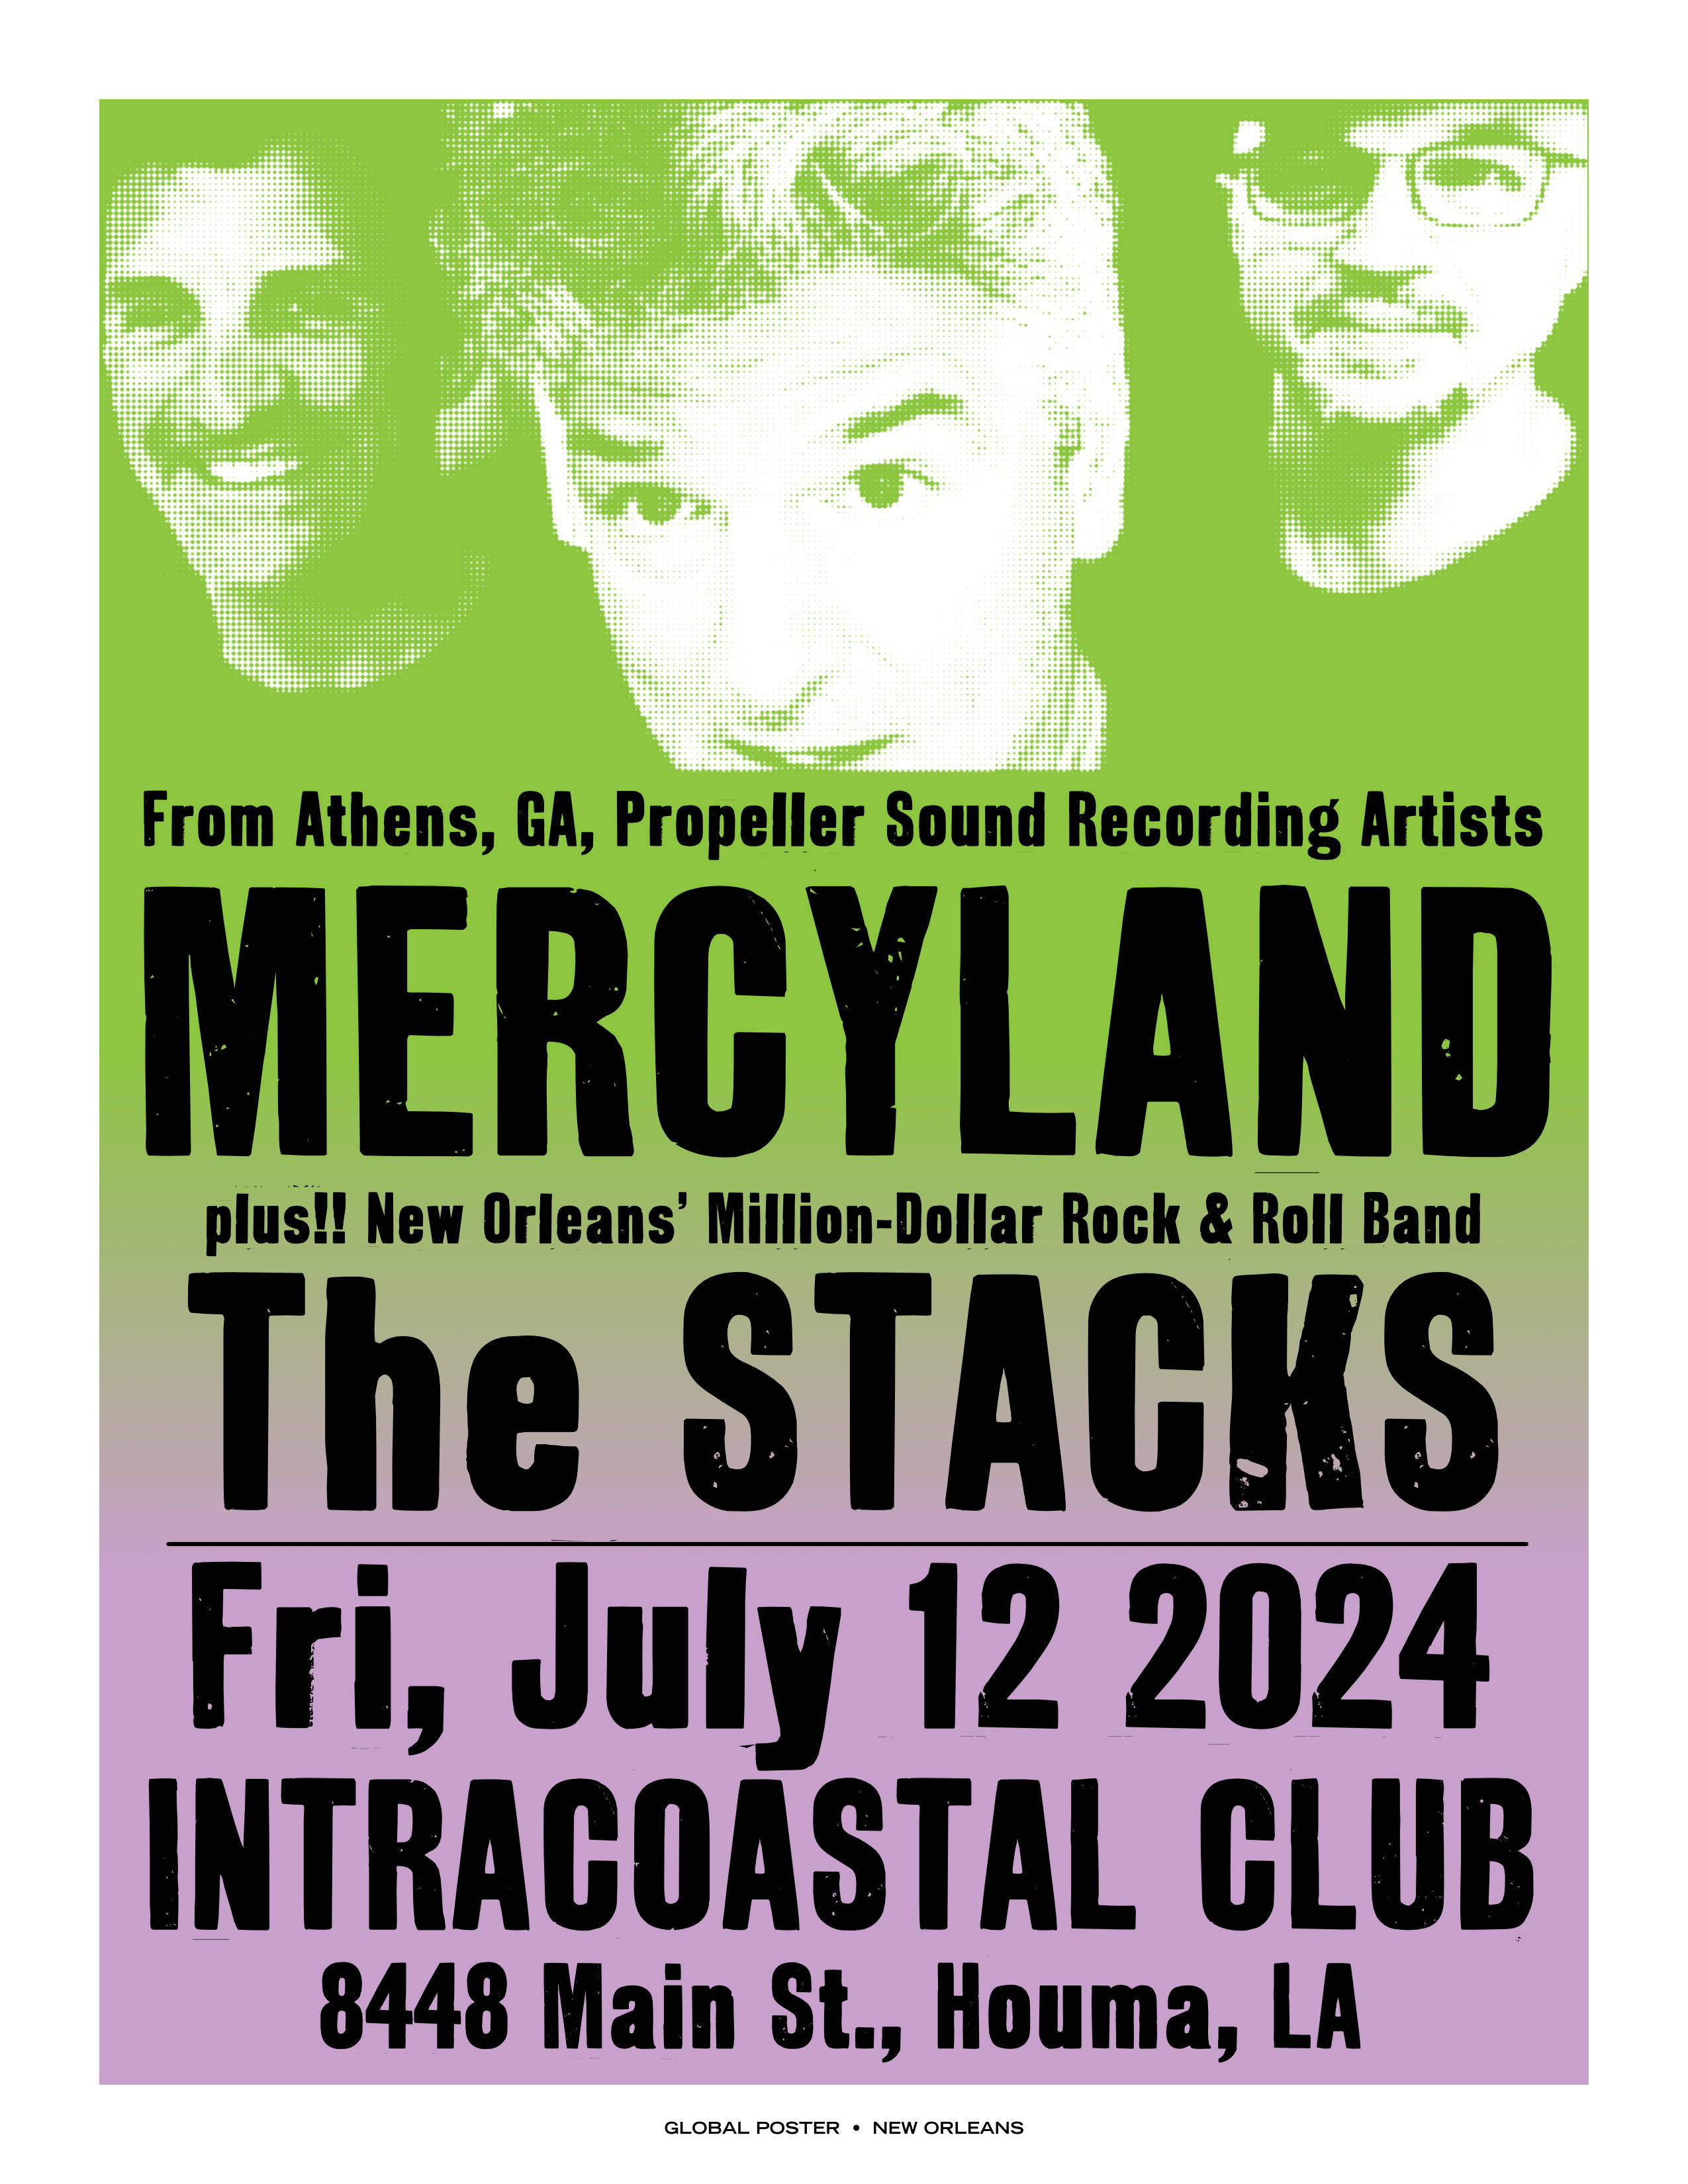 Stacks play Friday, July 12, 2024 in Houma, Louisiana with Mercyland.